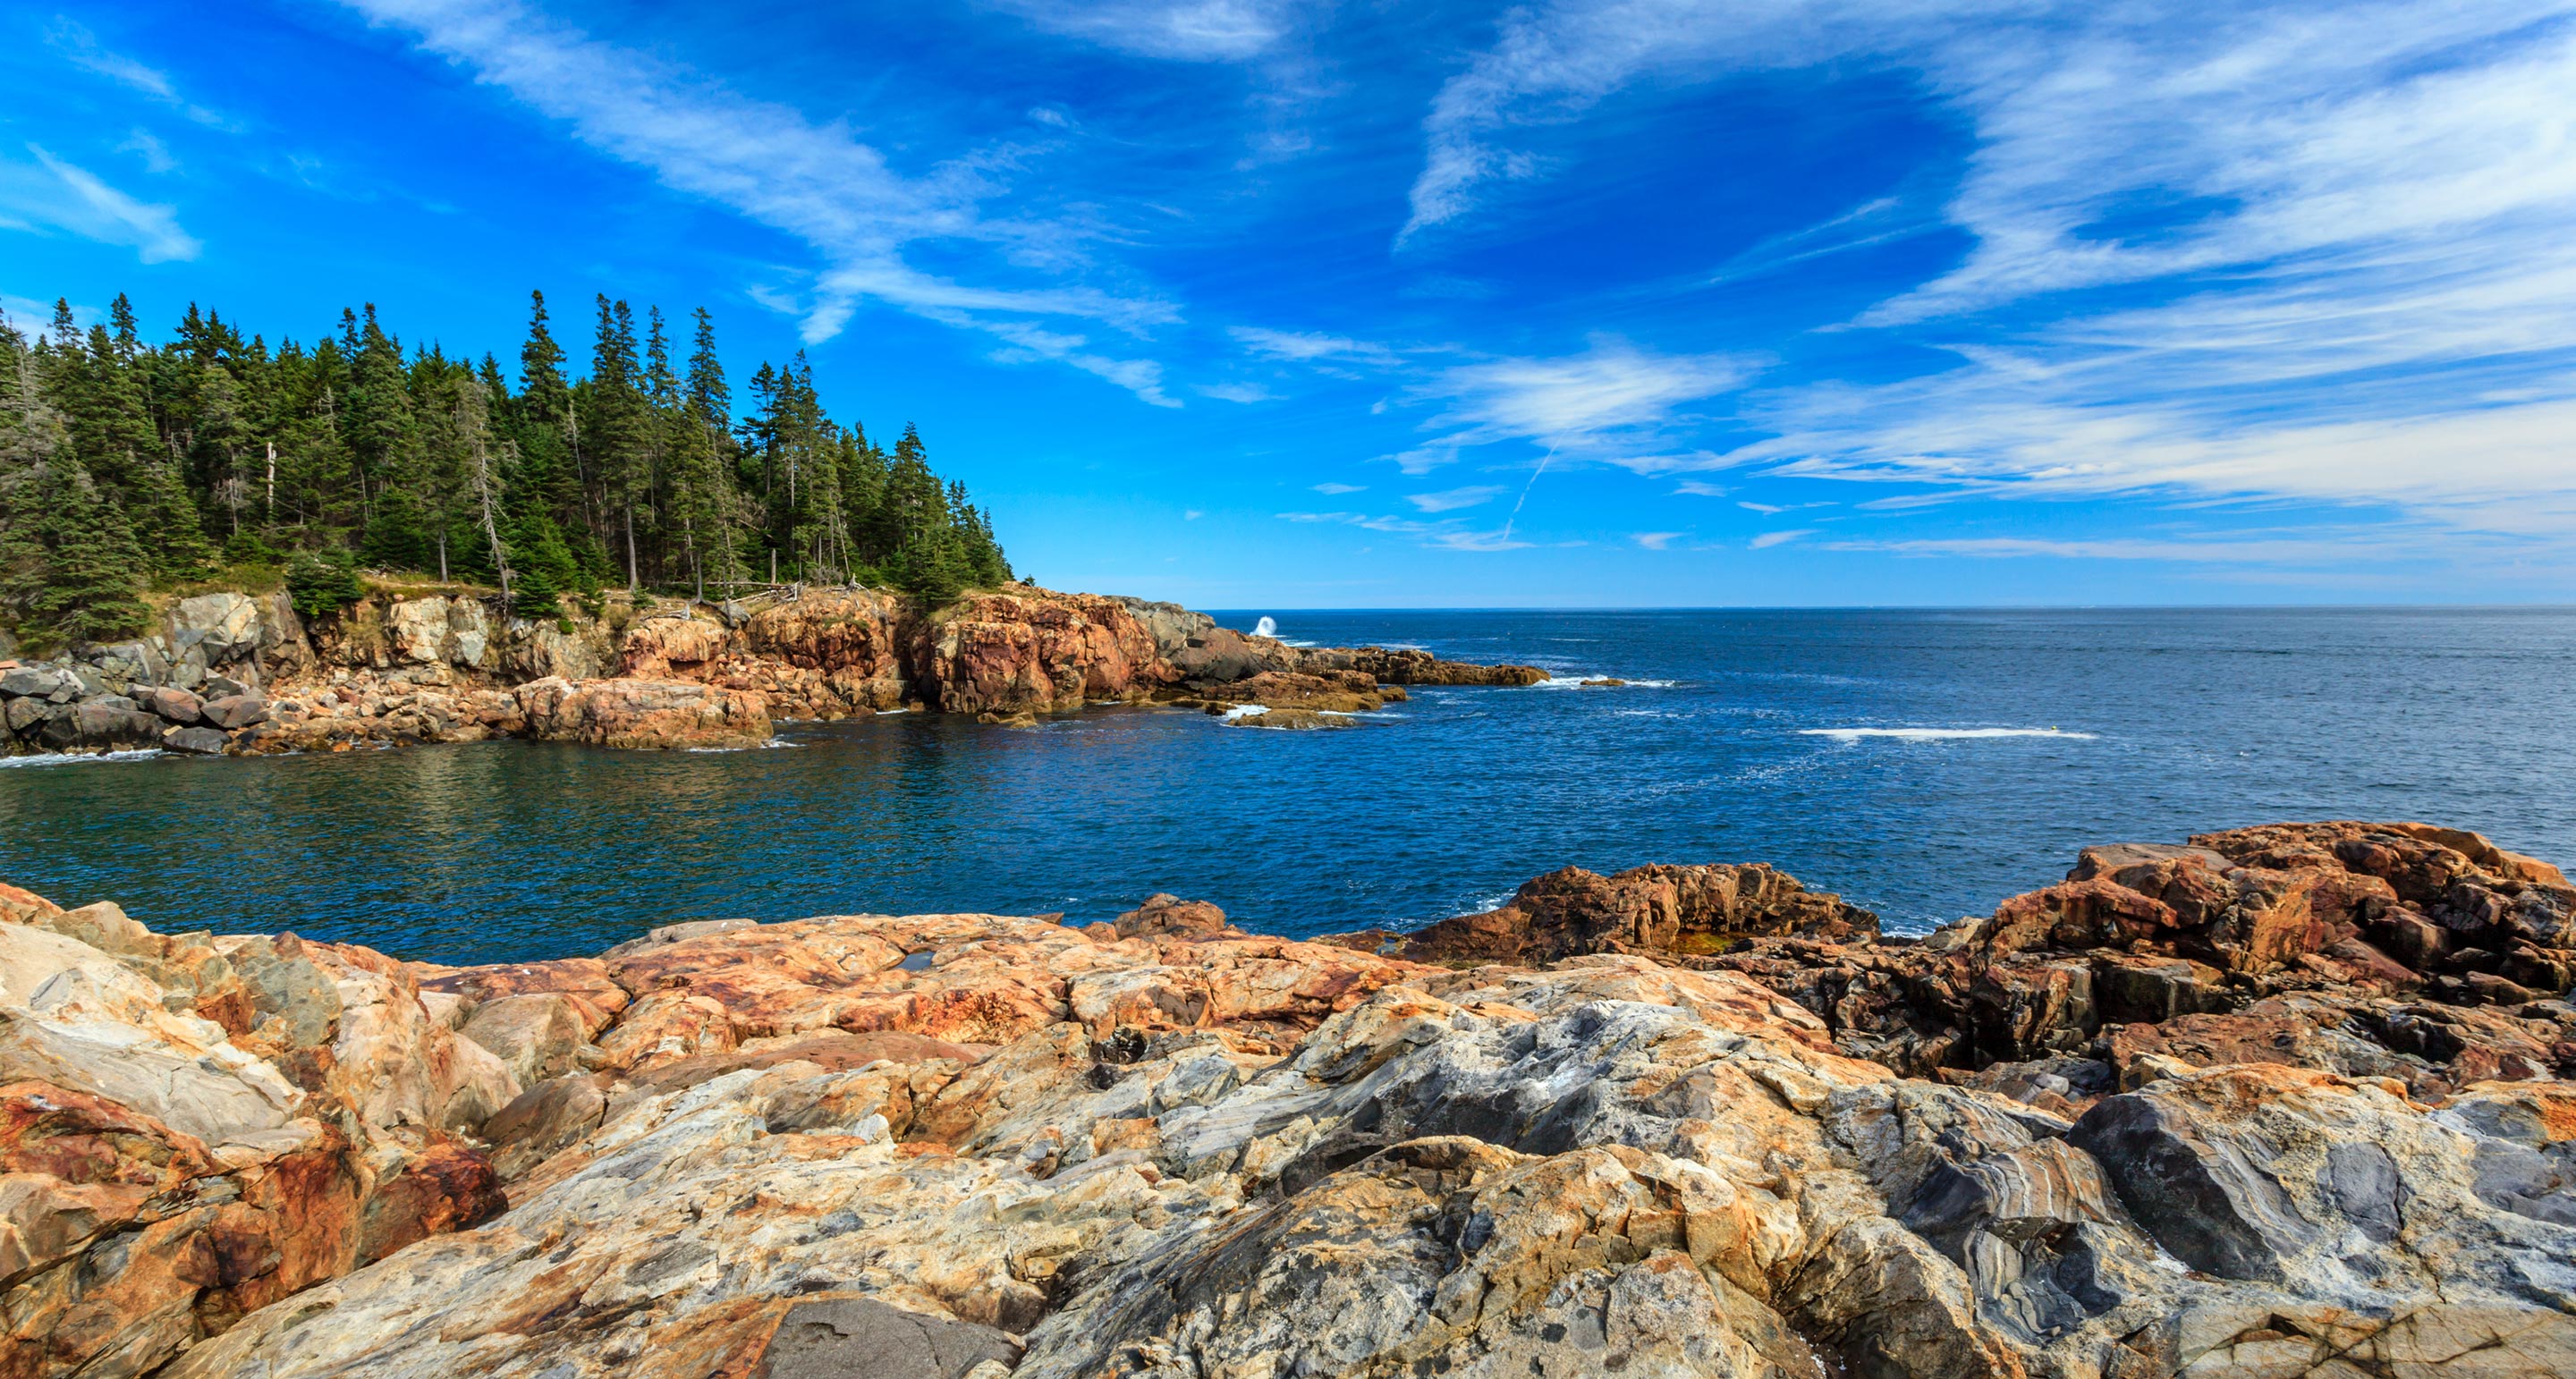 The rocky coast at Acadia National Park